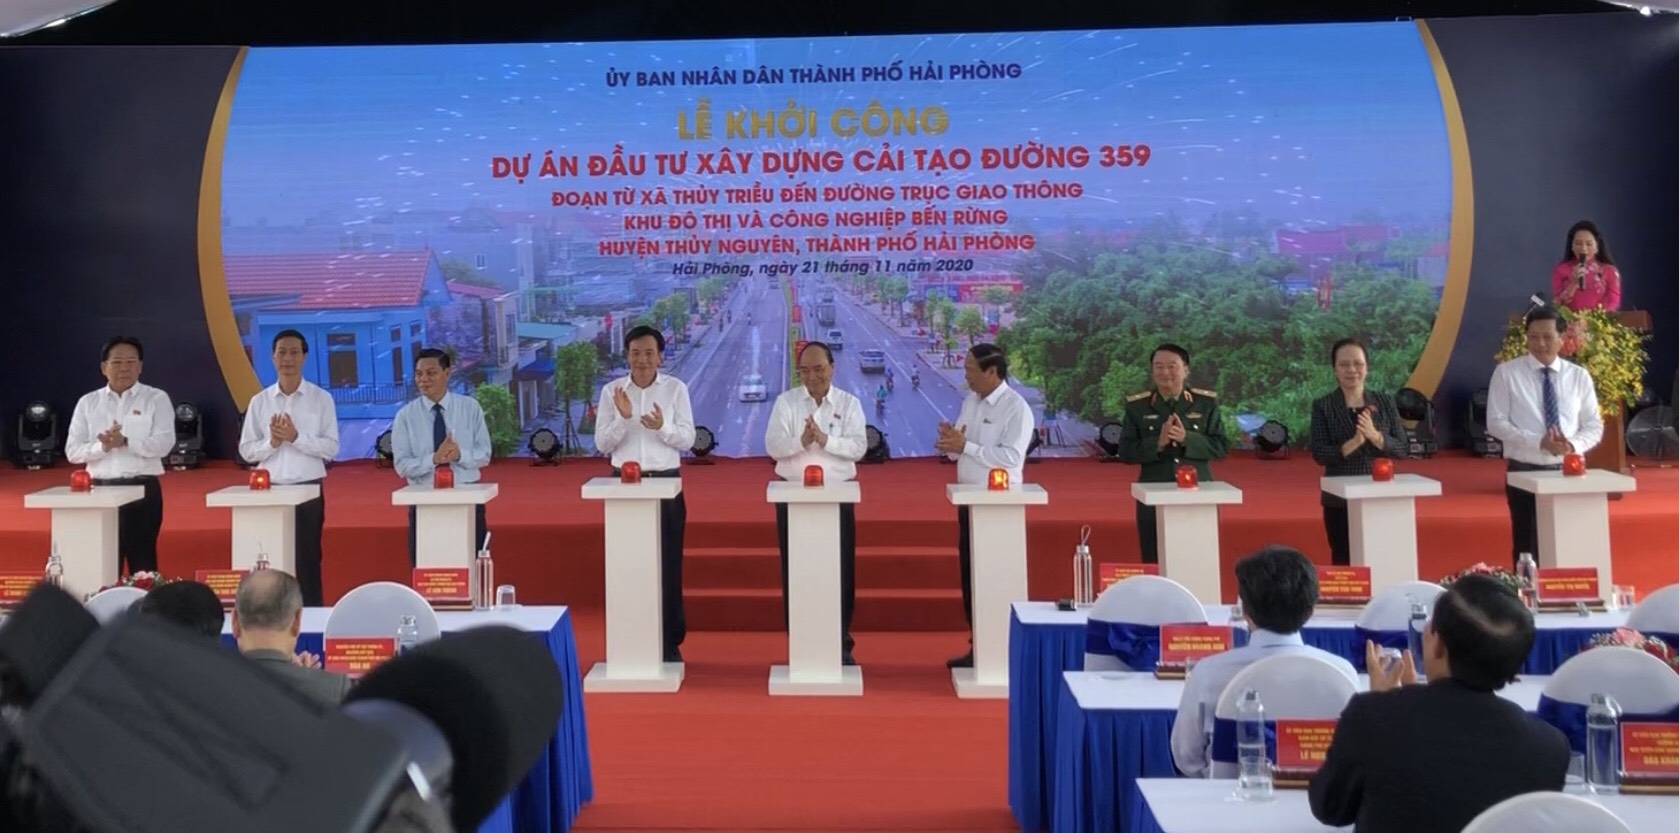 Thủ tướng Chính phủ bấm nút khởi công Dự án Đầu tư xây dựng cải tạo đường 359 tại Hải Phòng